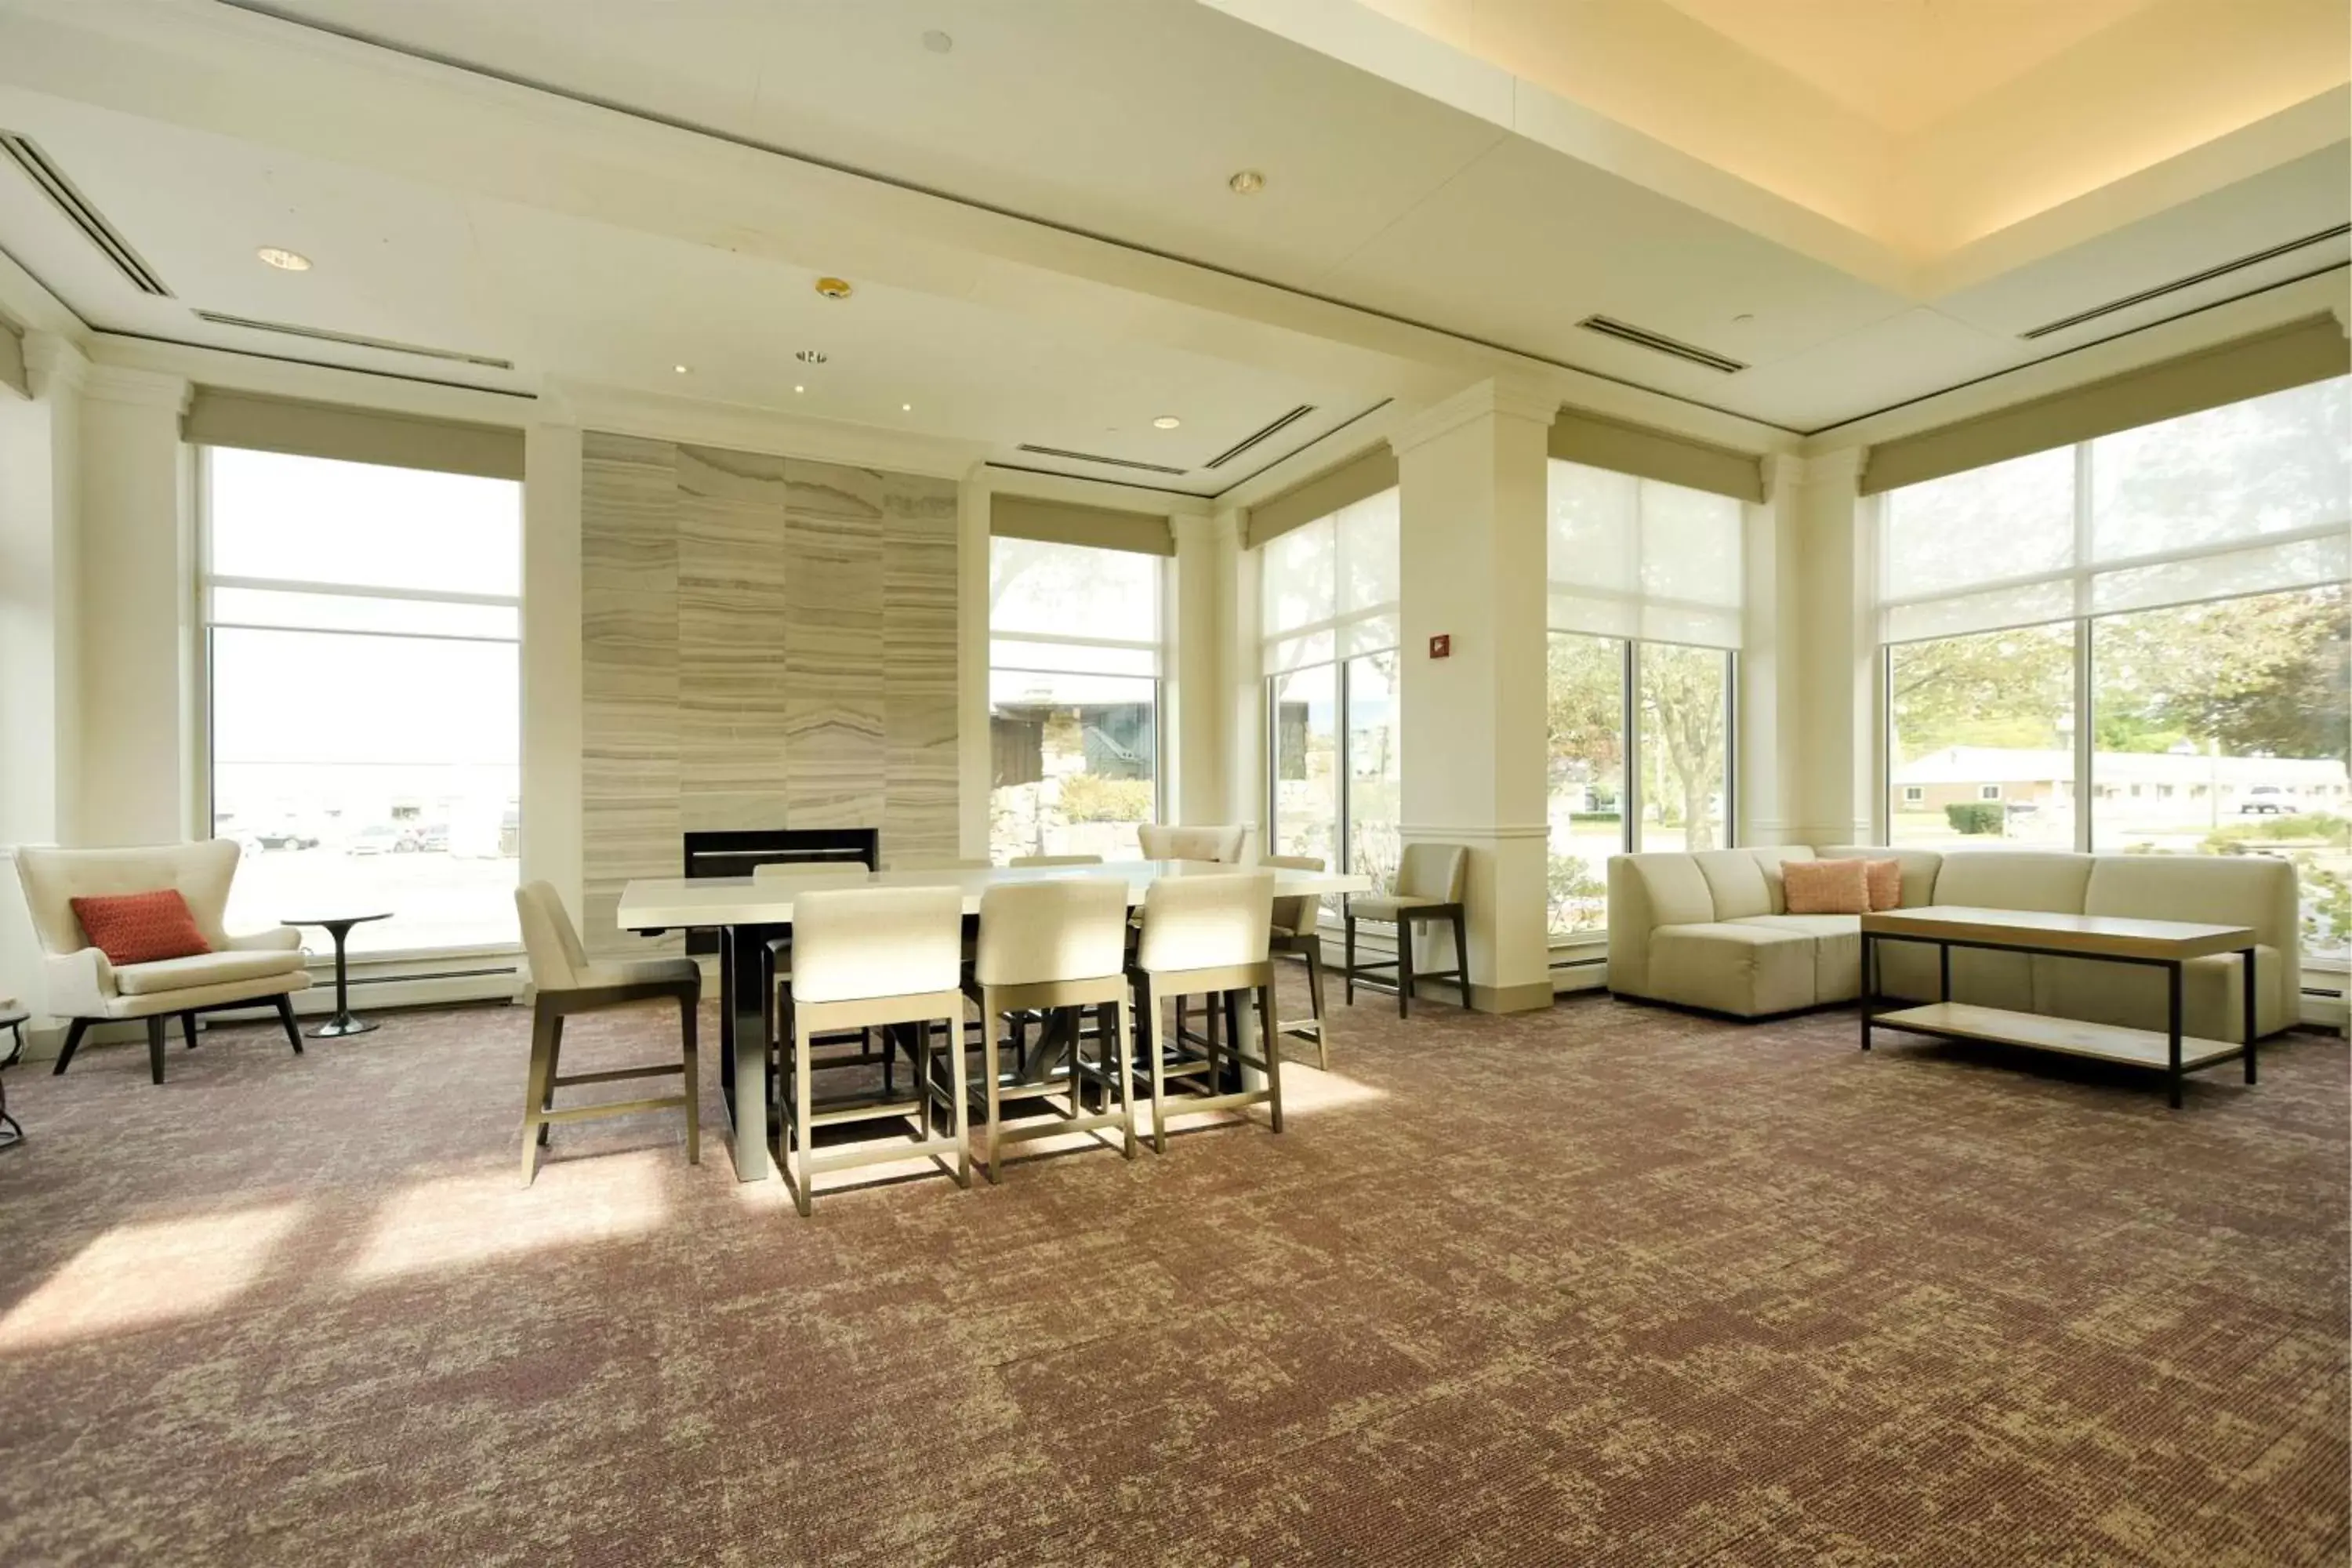 Lobby or reception in Hilton Garden Inn Saratoga Springs